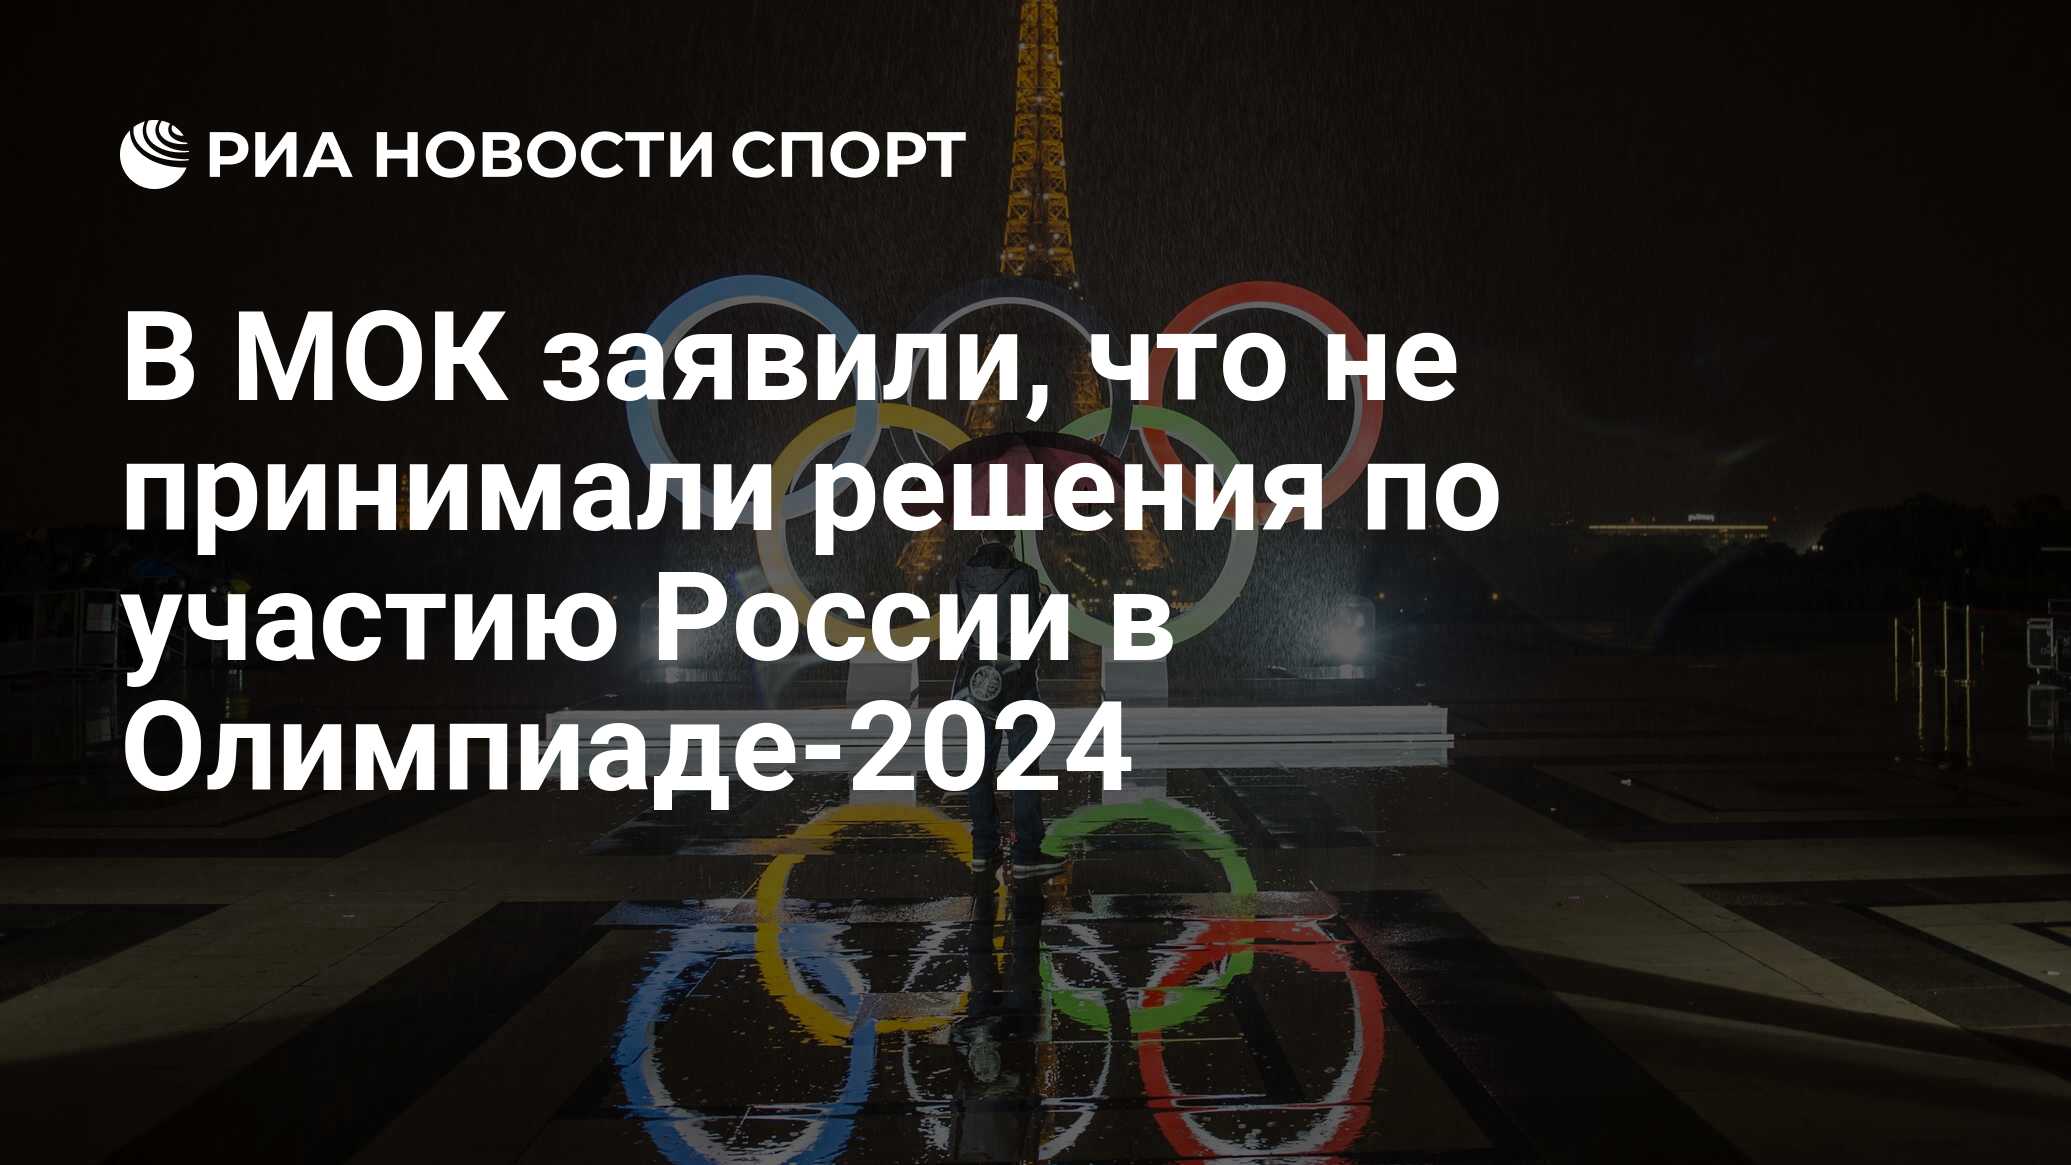 Где будет проходить олимпийские игры в 2024. Приколы про МОК И Олимпиаду 2024.